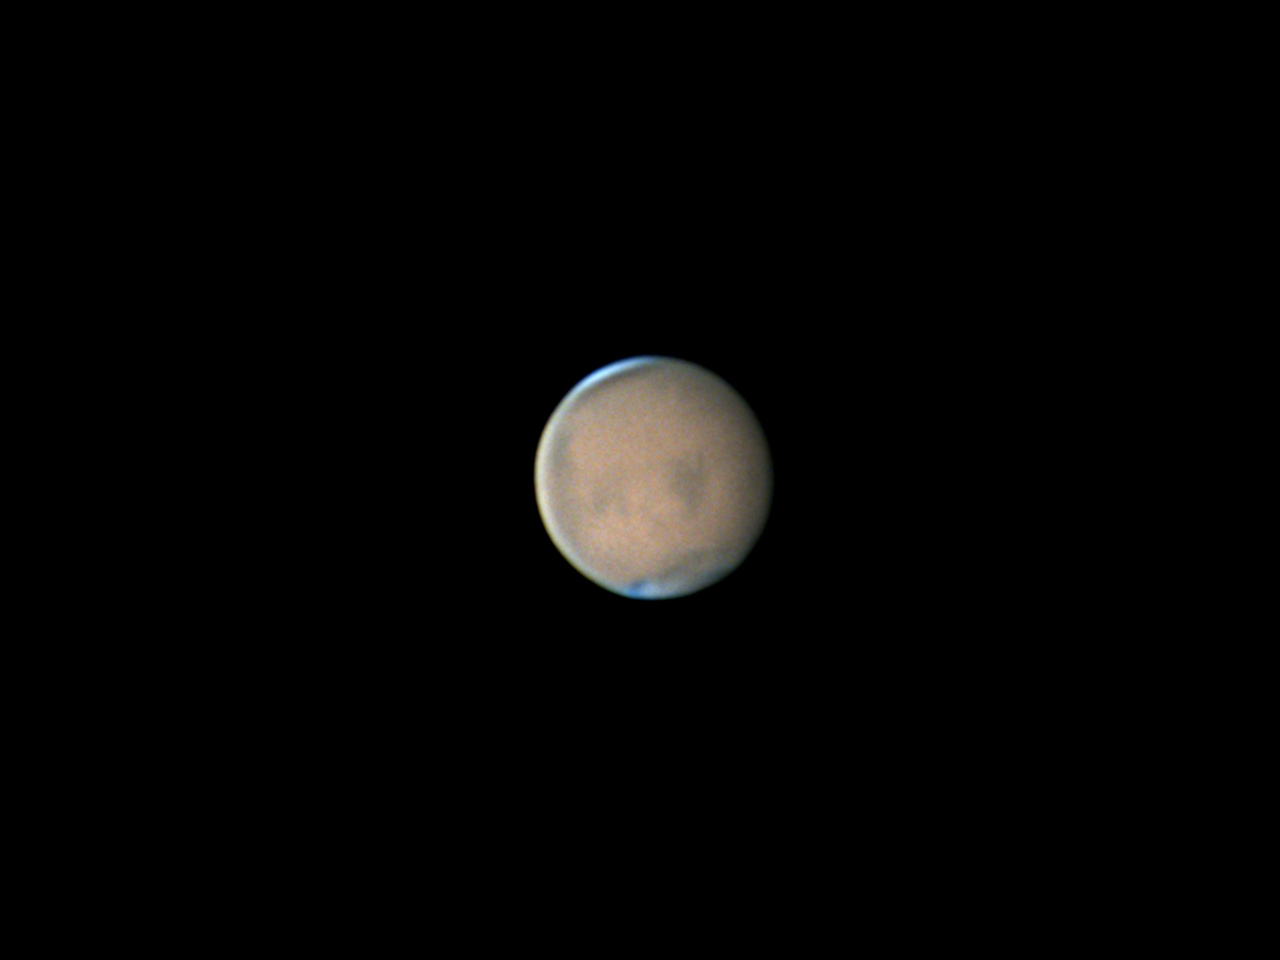 Mars02_22_31_AS_P12_l6_ap22.jpg.26f39929580c1a0a579e875aac8c44e2.jpg